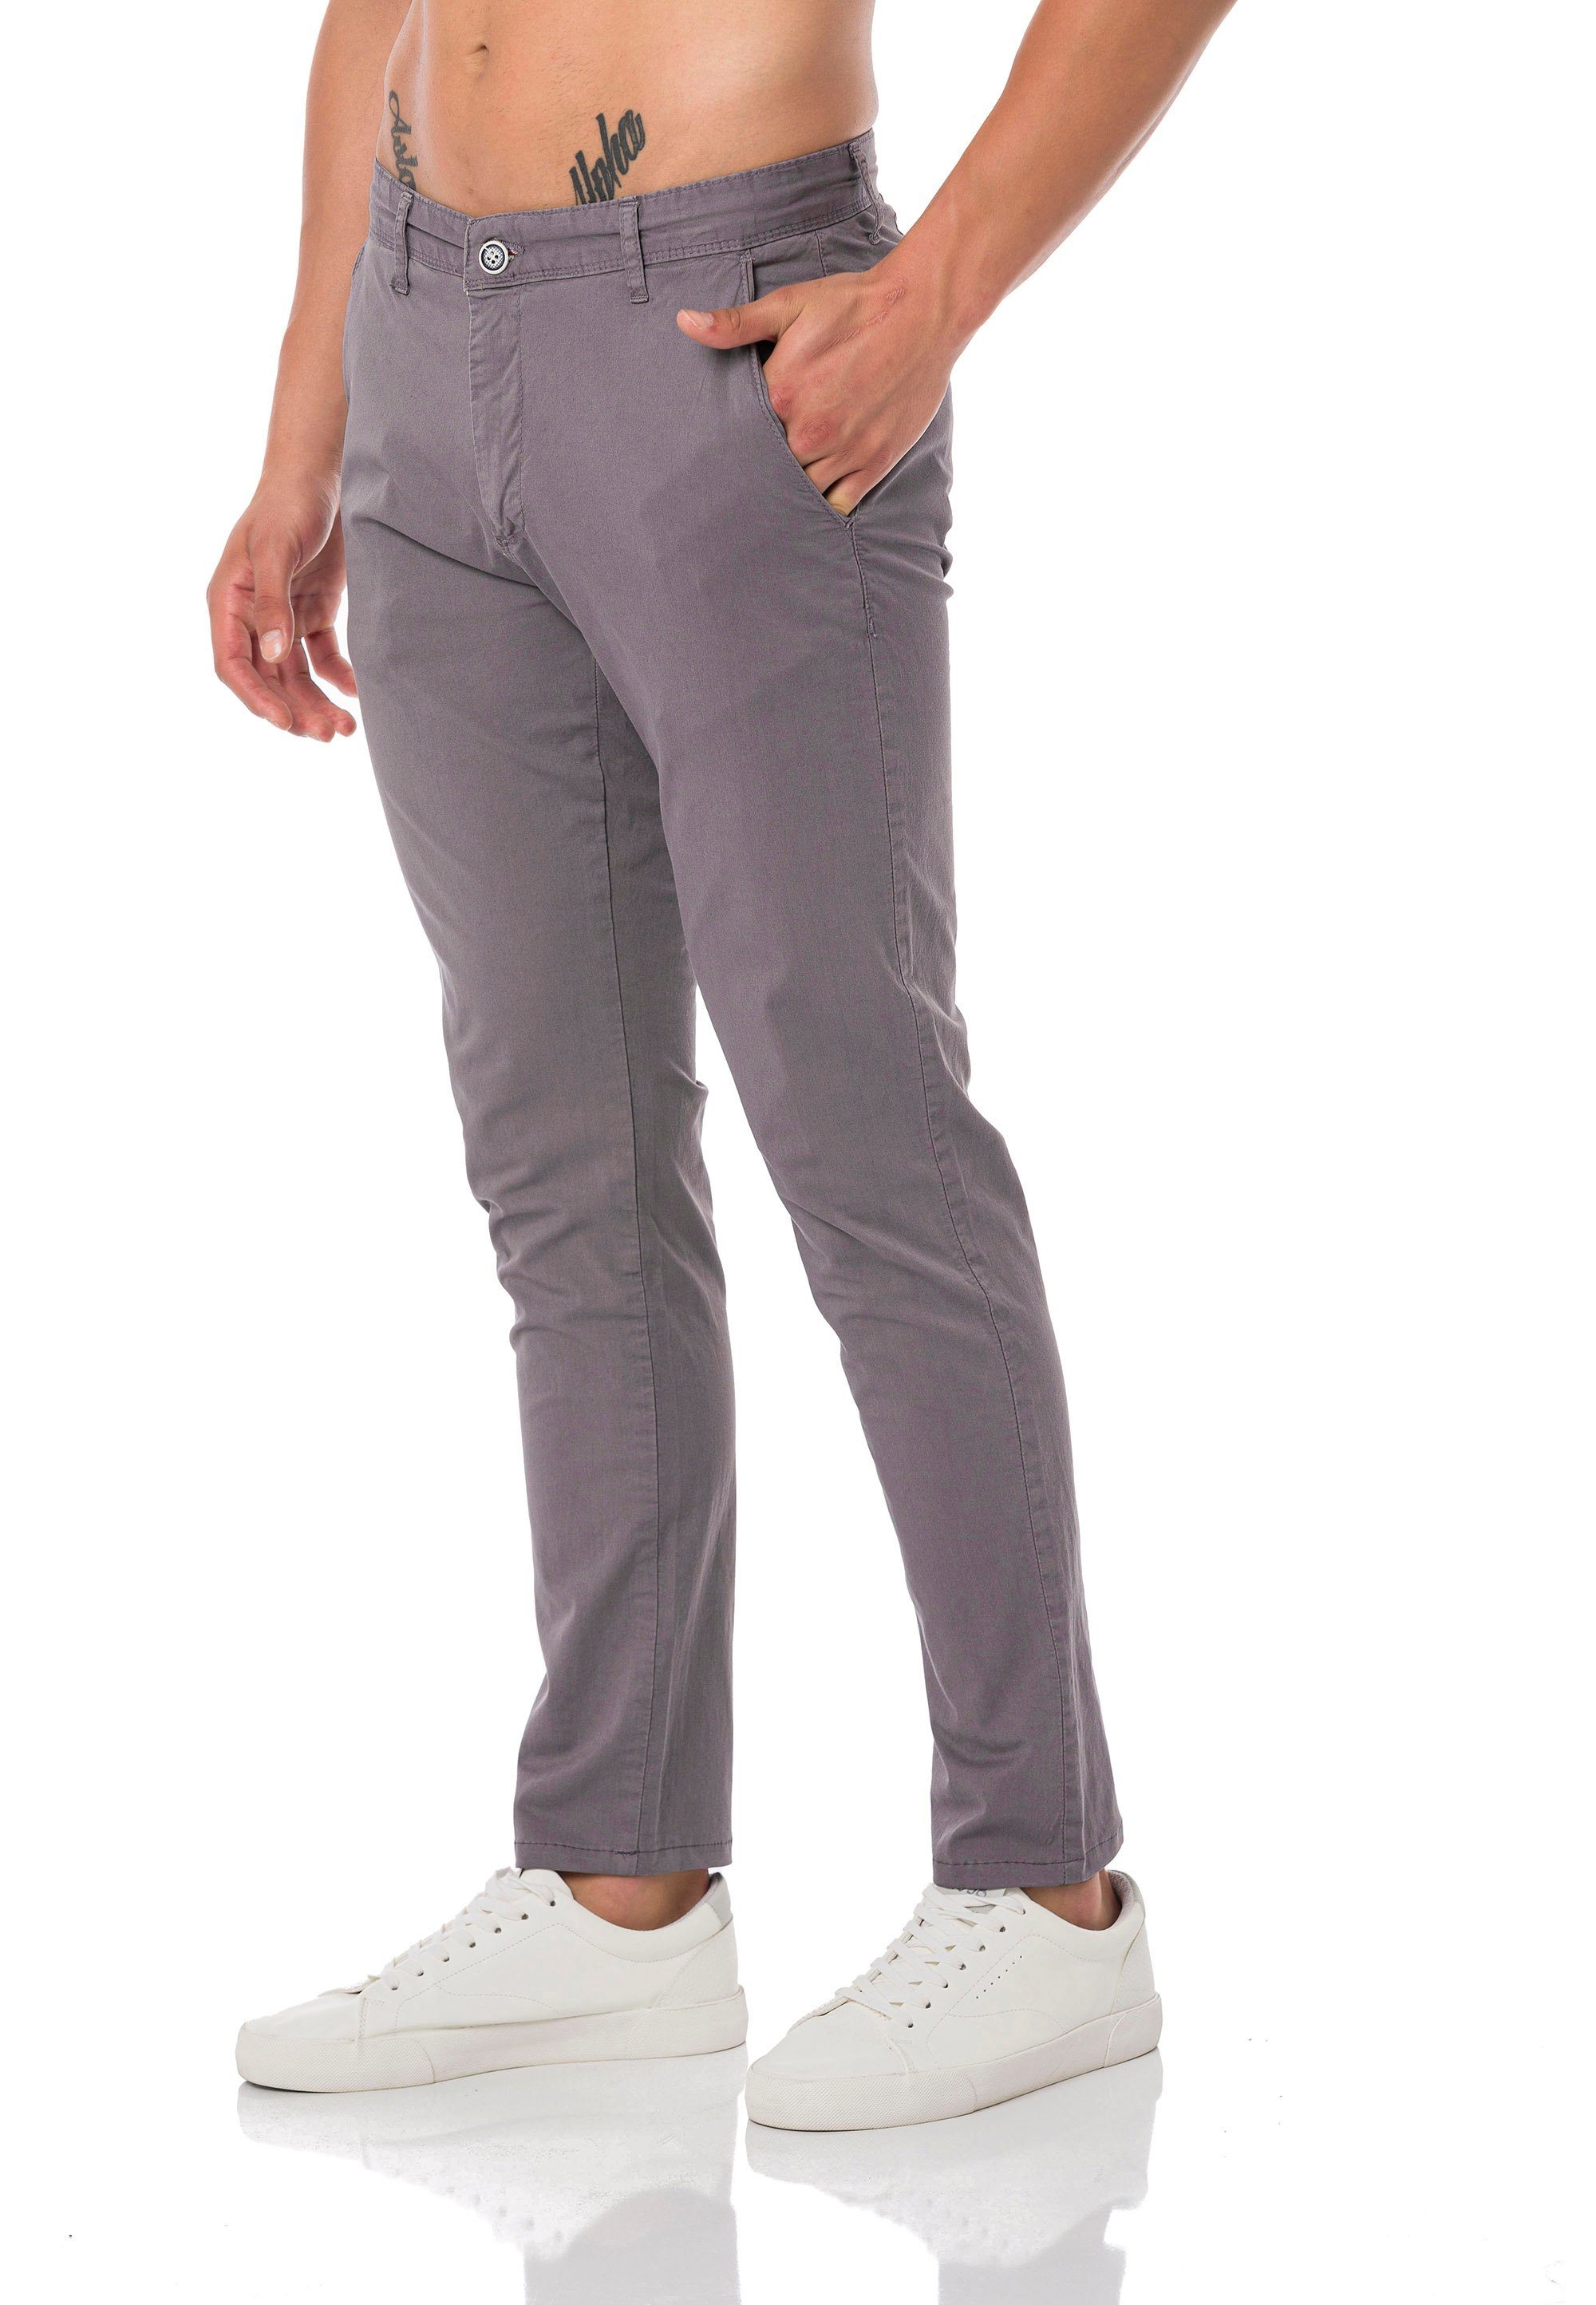 RedBridge Chinohose Premium Allrounder Hose vielseitig kombinierbar Grau